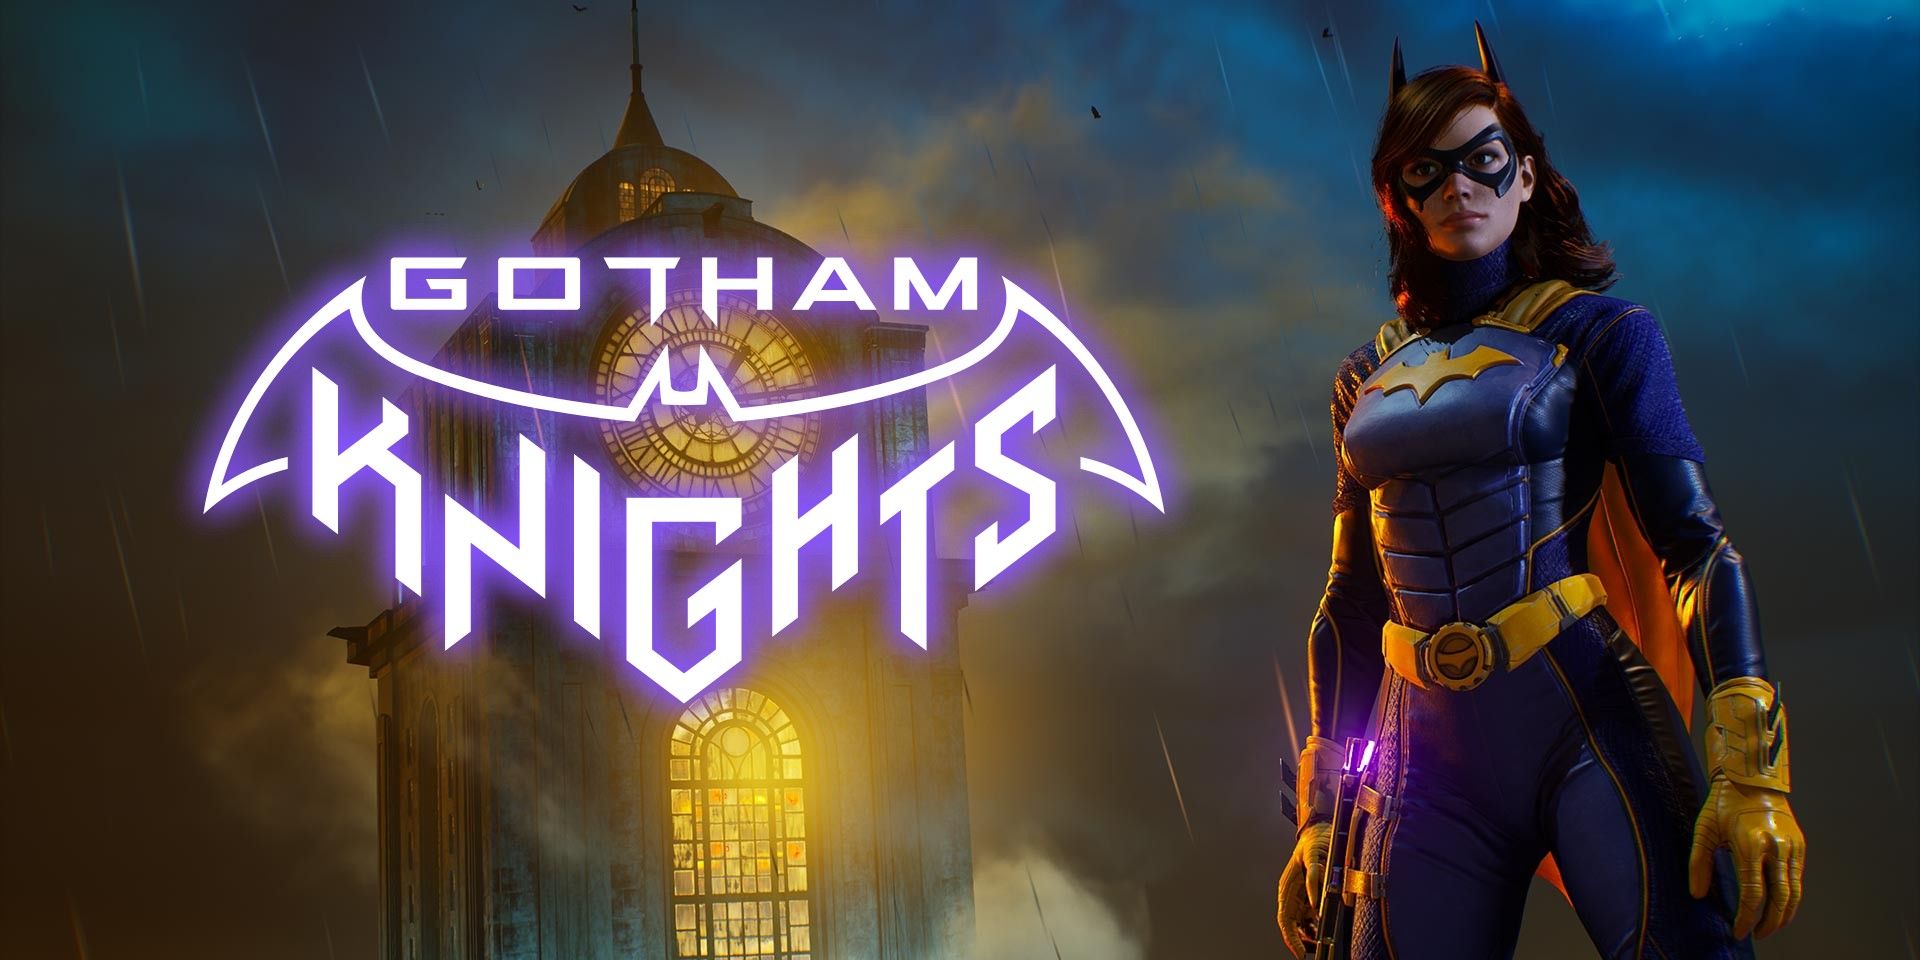 batman gotham knights release date 2021